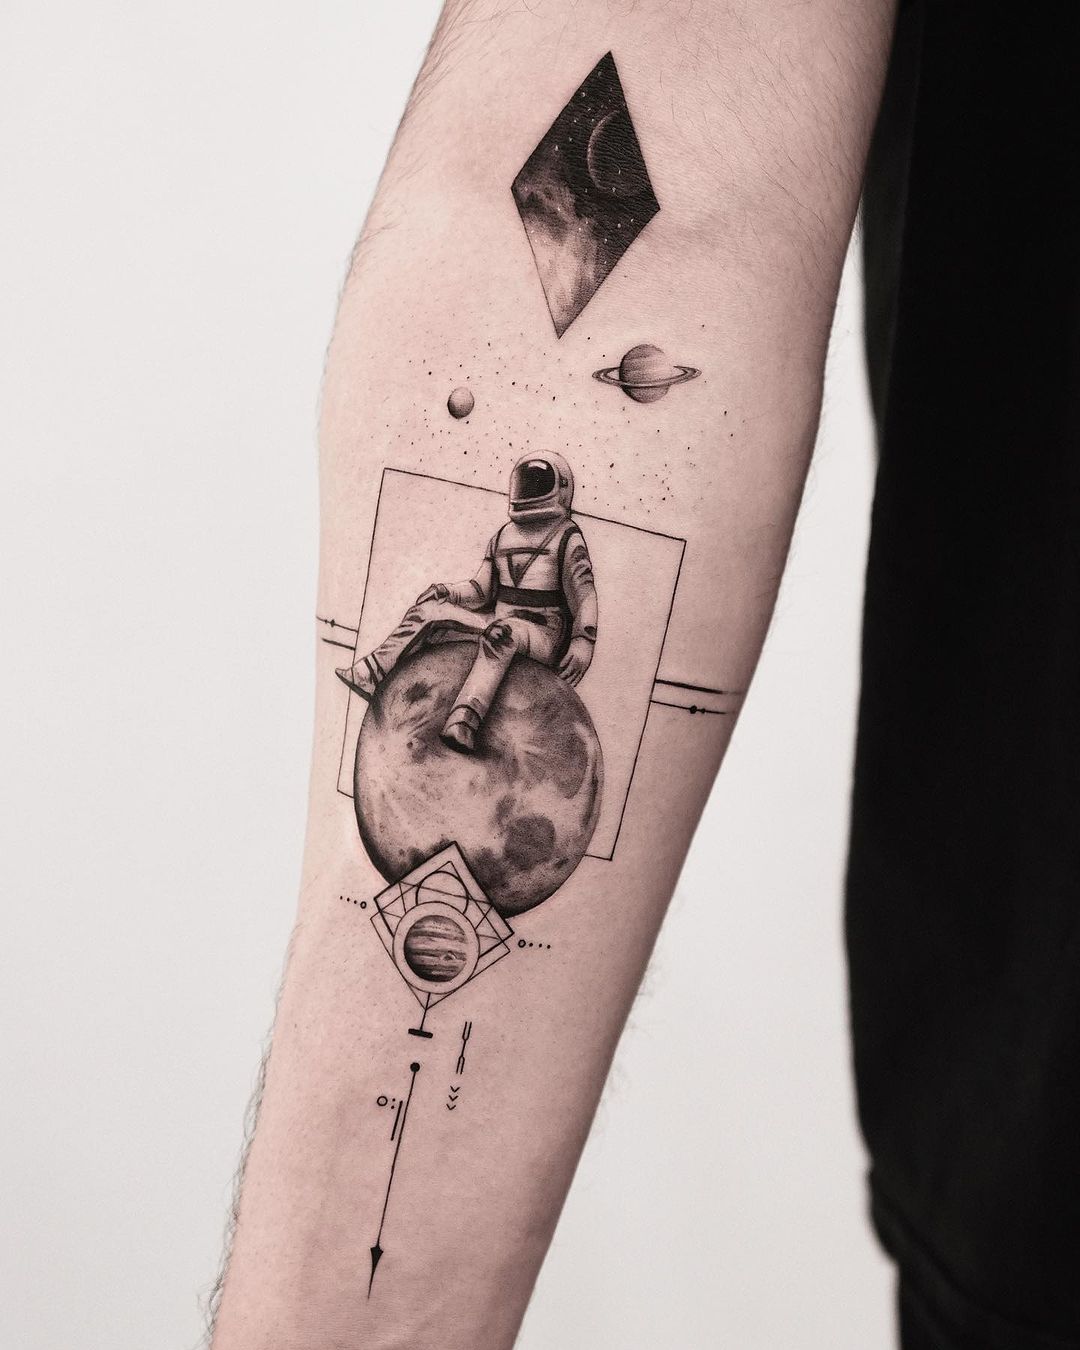 Astranaut tattoo on arm sleeve by kidneedle tattoo